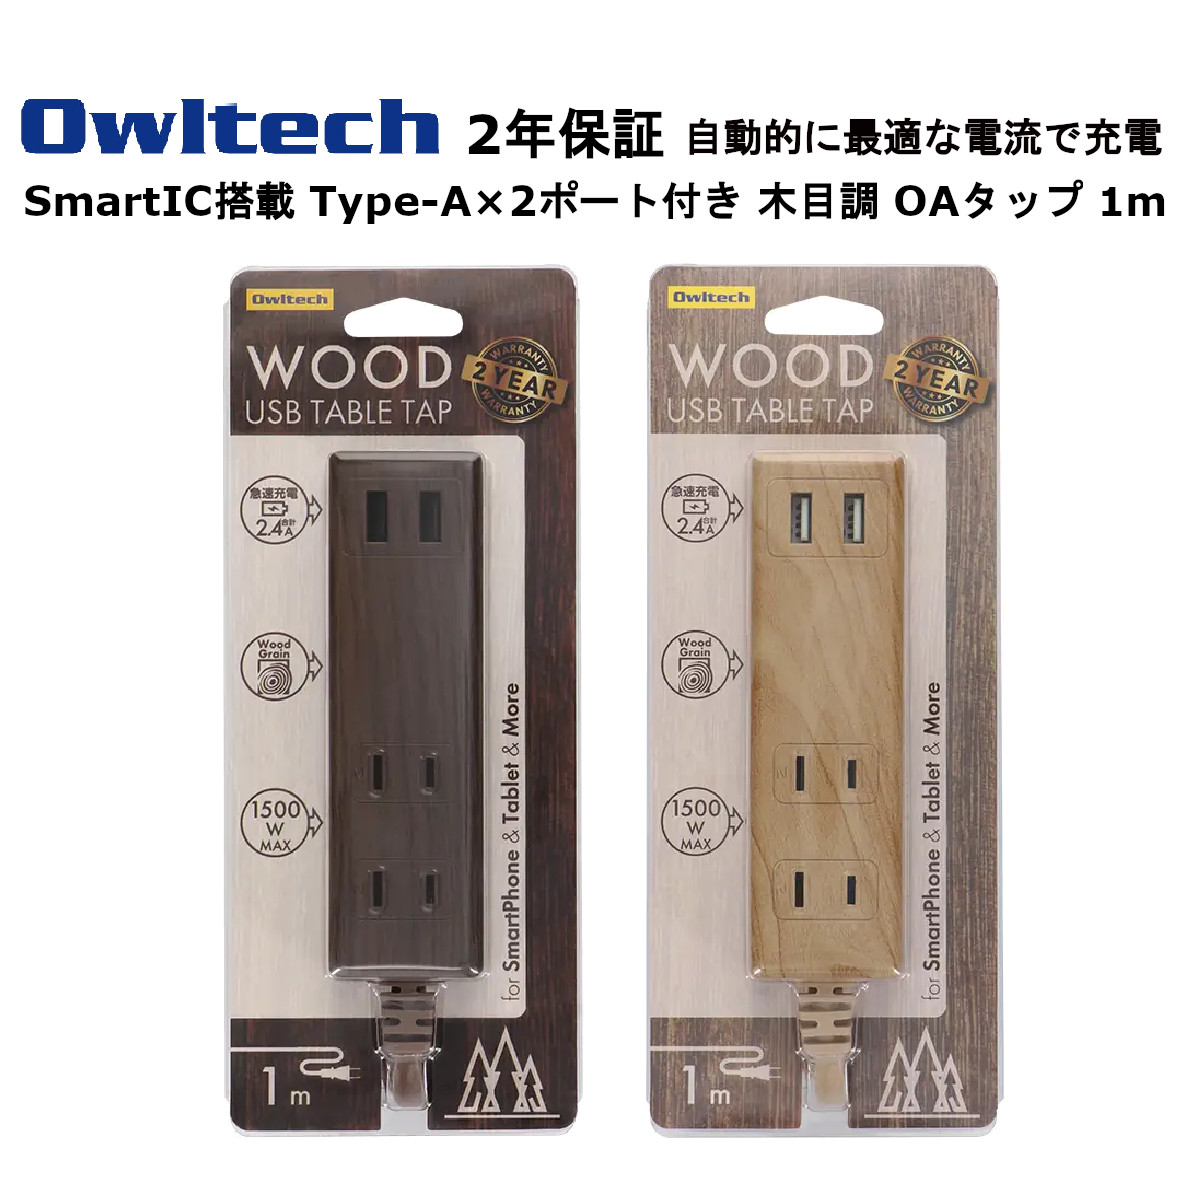 オウルテック USBポート付き OAタップ 製造メーカー2年保証 コード 1m 電源タップ 充電器 タップ 急速充電 2.4A出力対応 スマートフォン スマホ タブレット